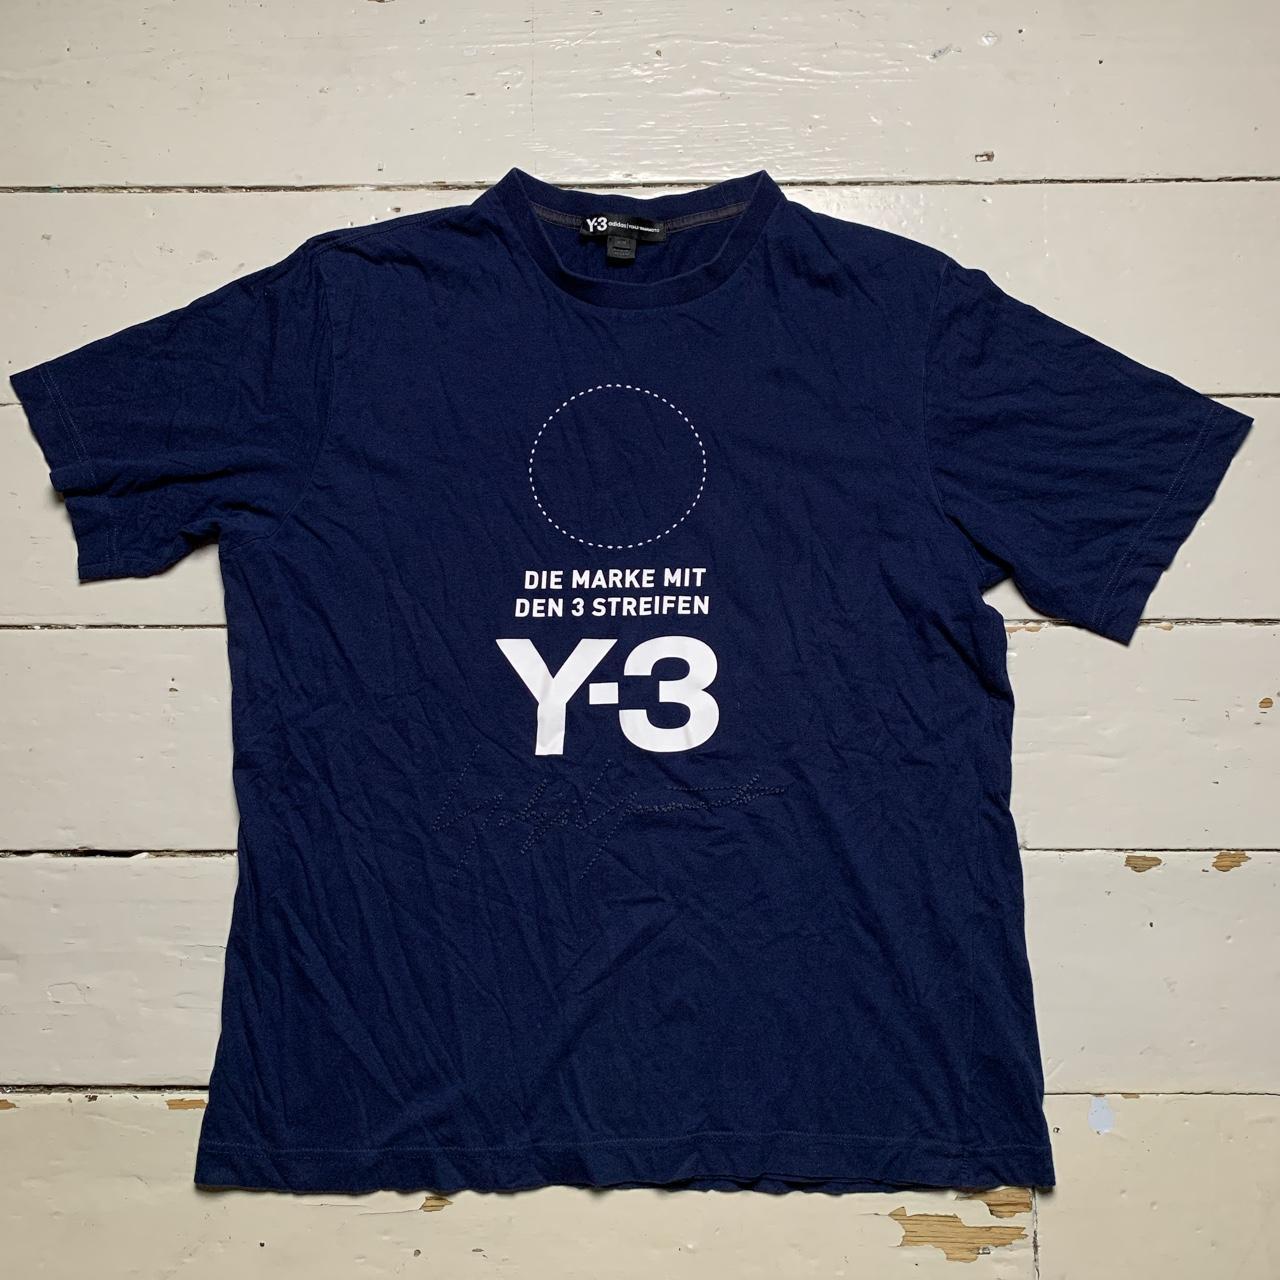 Y-3 Yohji Yamamoto T Shirt Navy and White